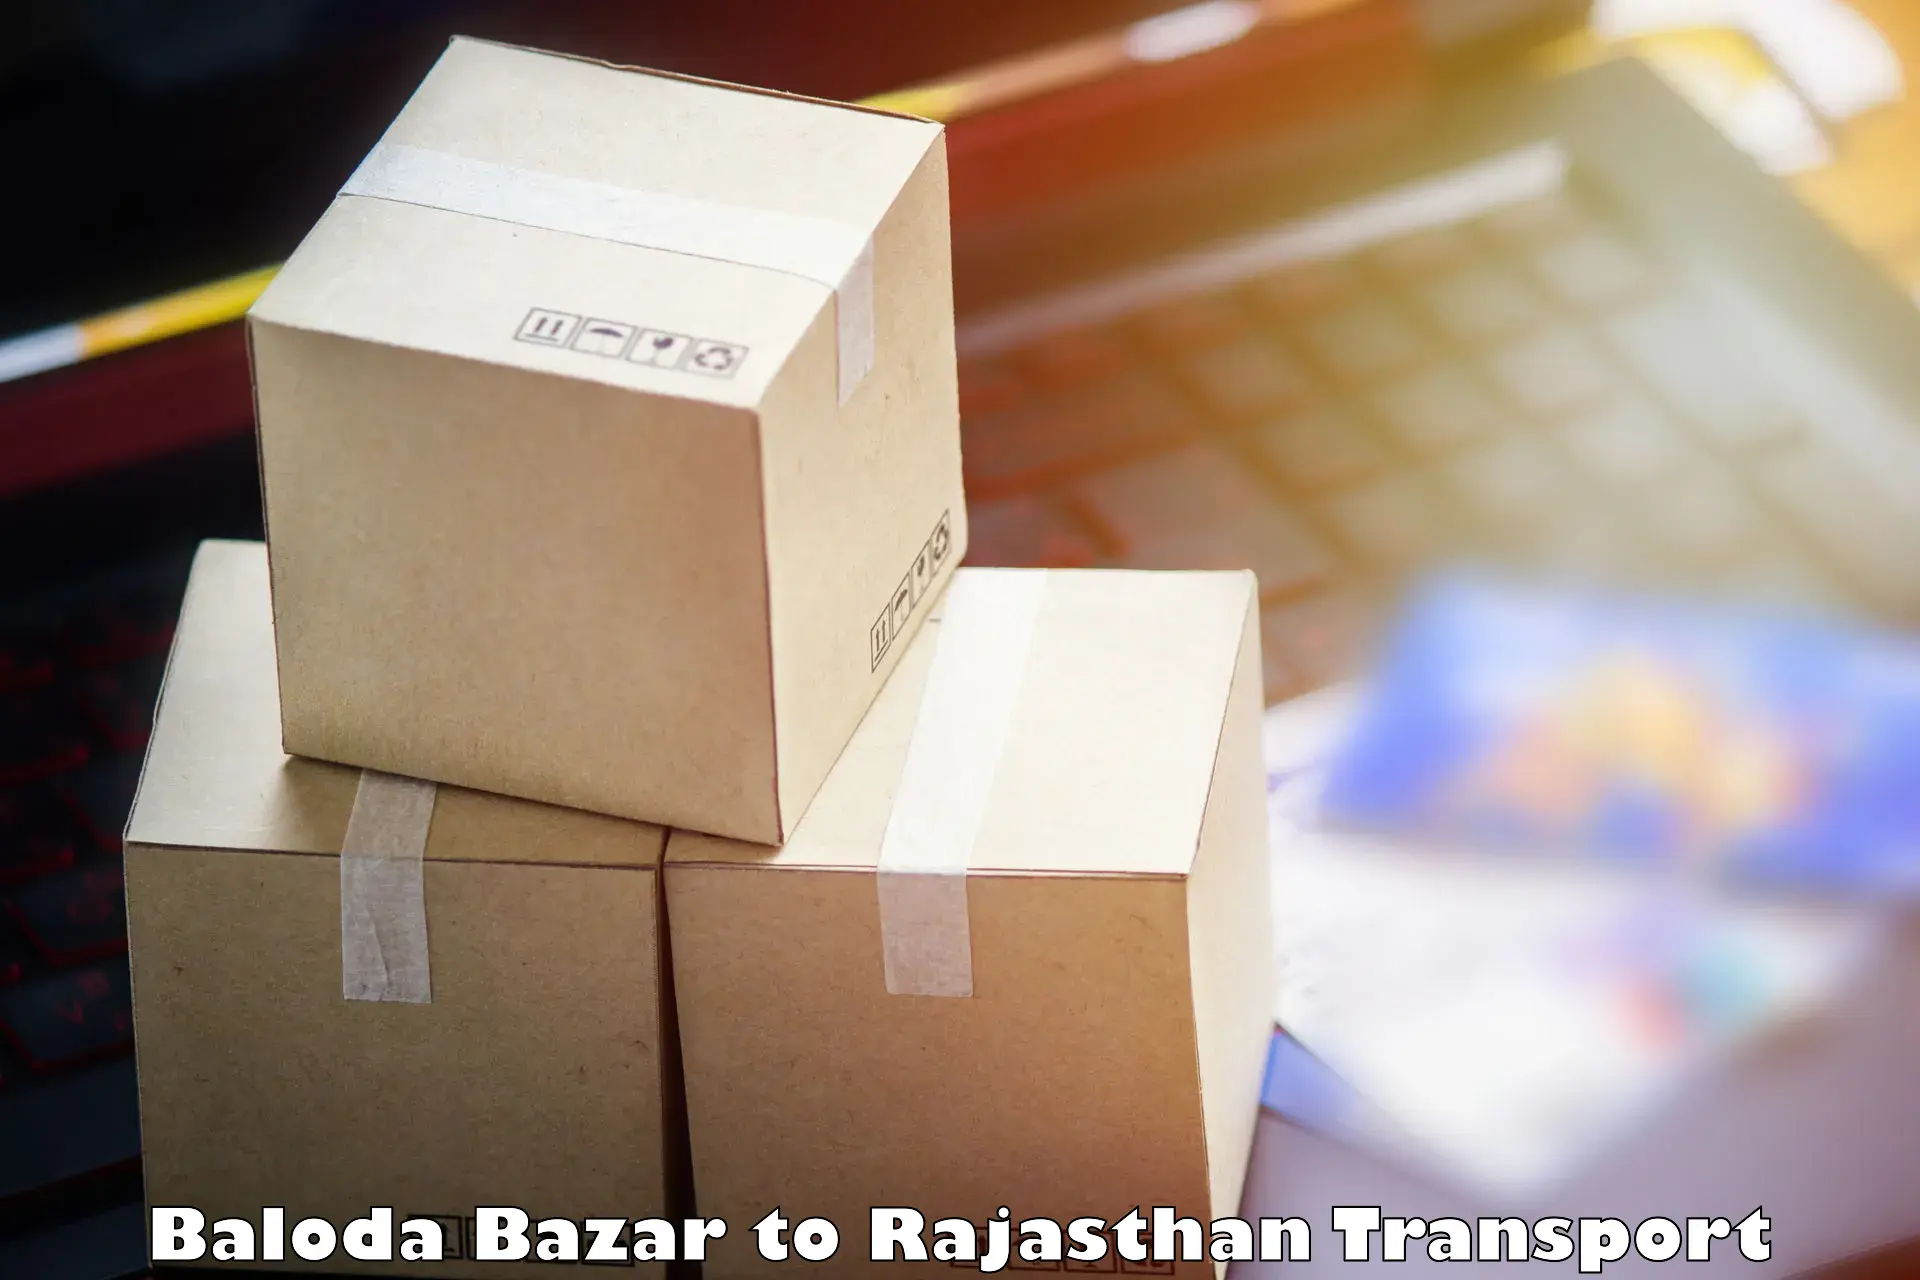 Material transport services Baloda Bazar to Hindaun